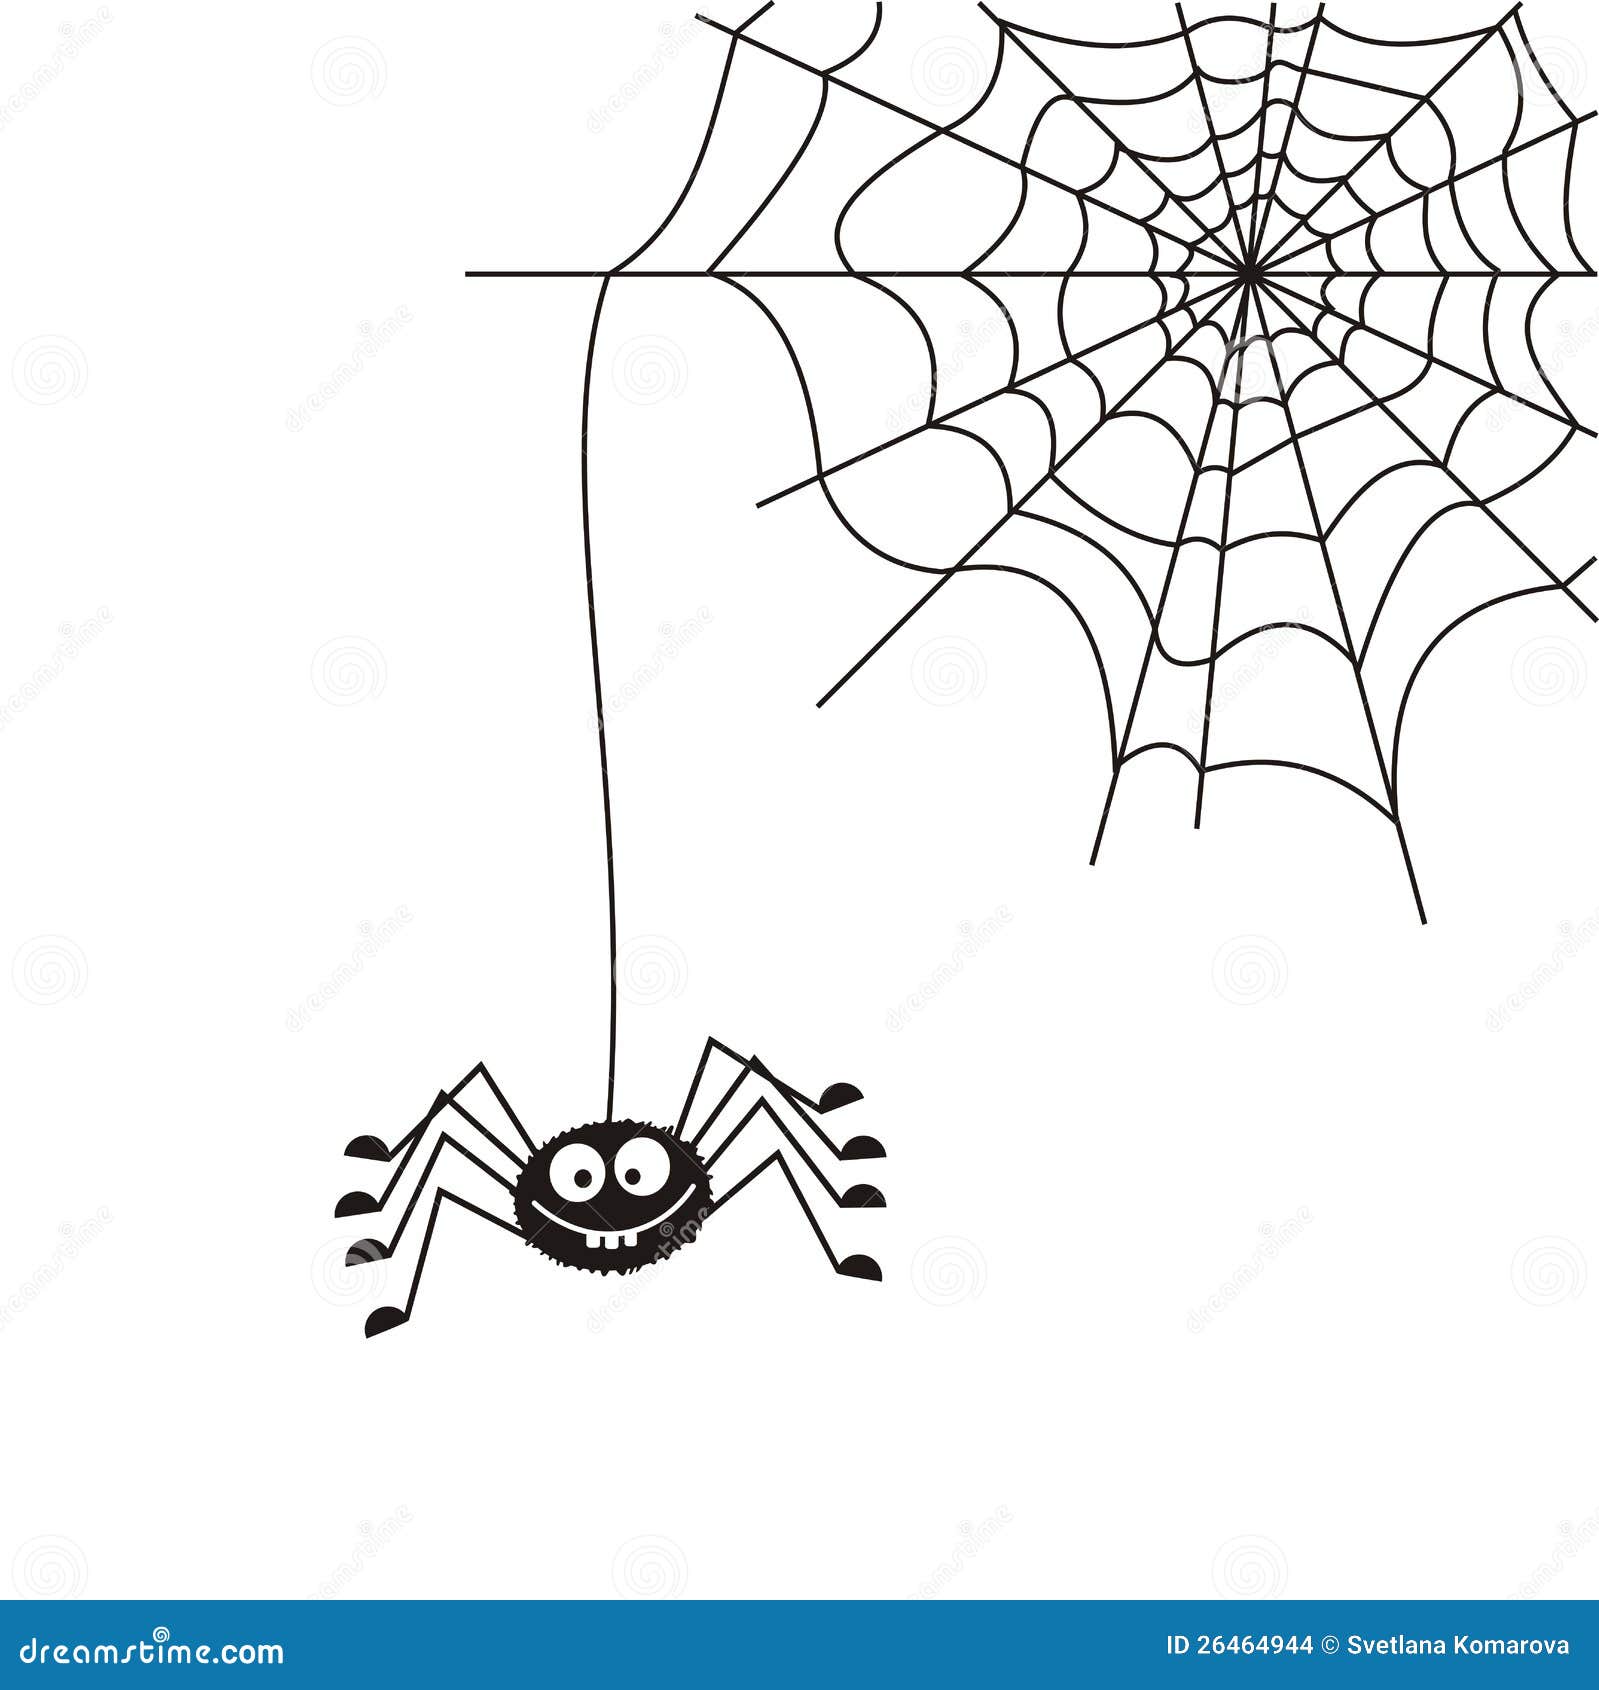 Паук сплел паутину как показано на рисунке. Паутина. Паук на паутине. Паутина рисунок. Паучок на паутине для детей.